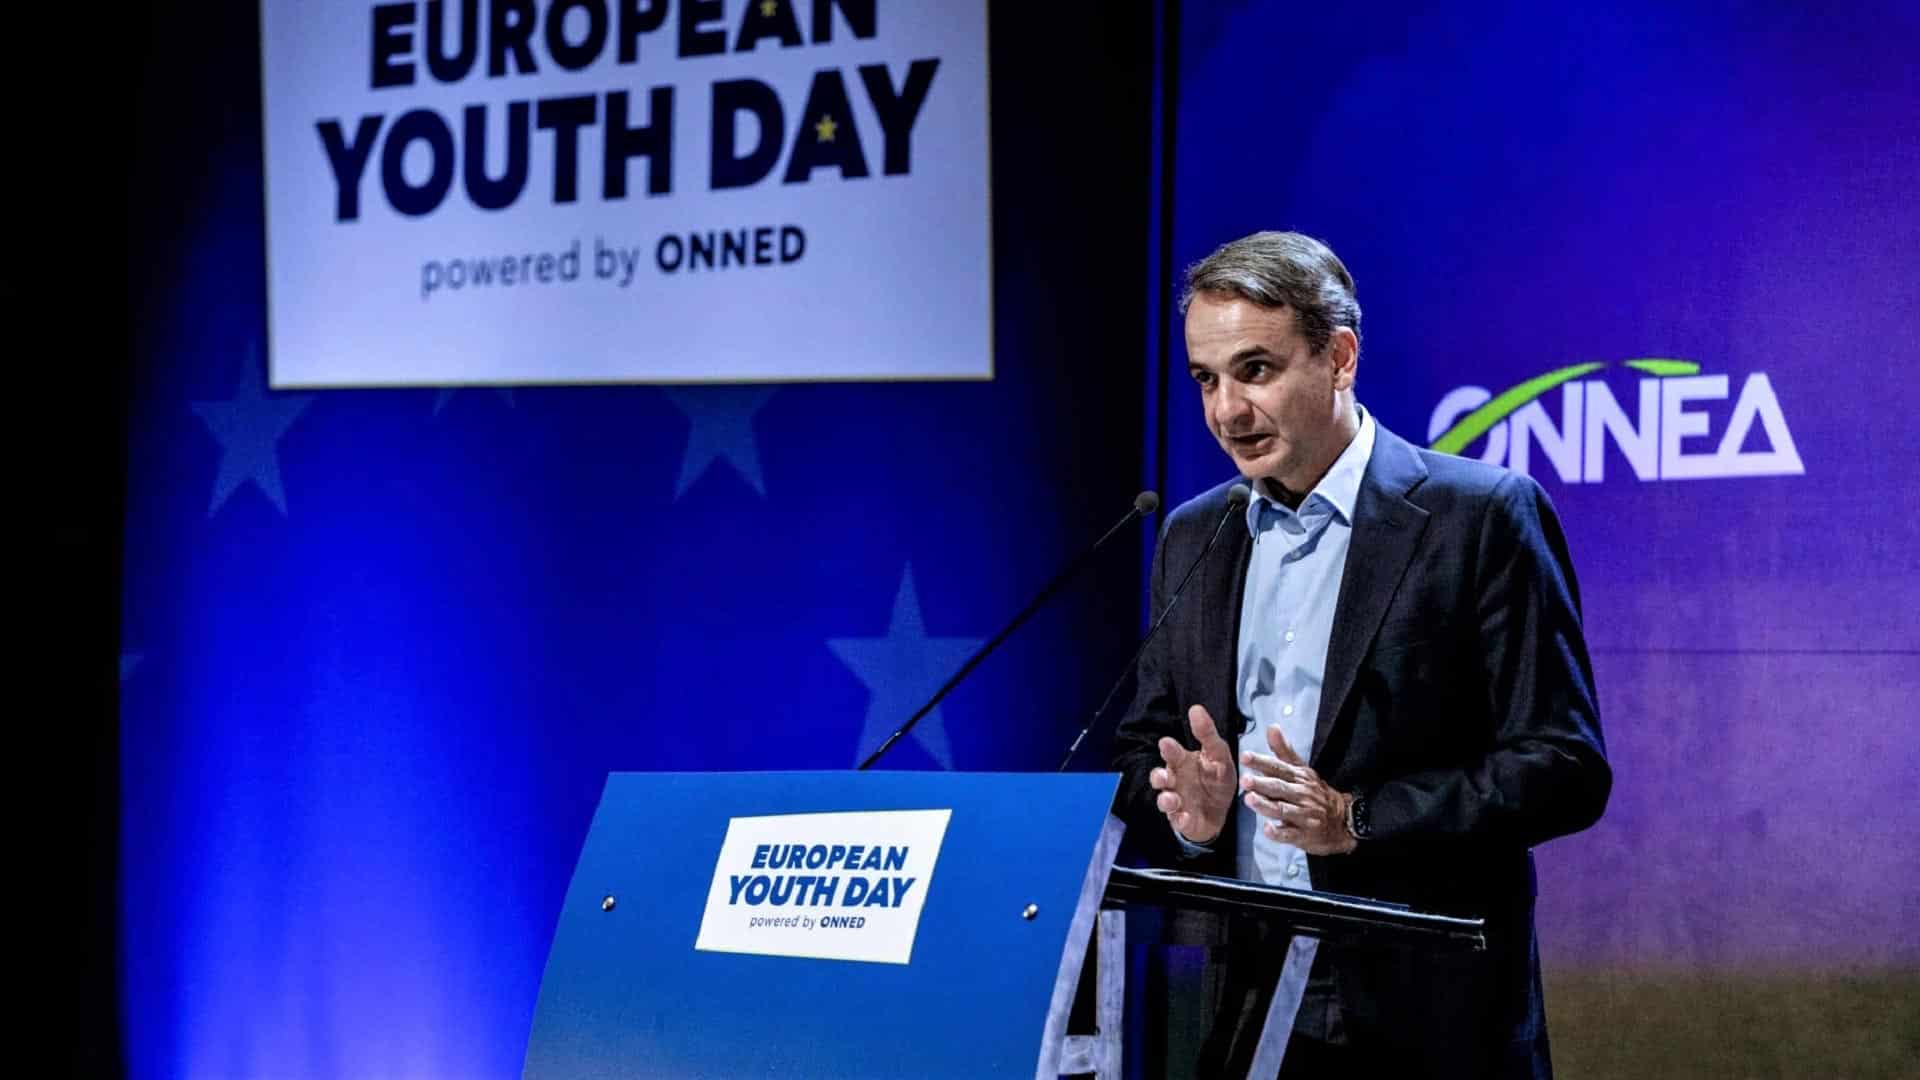 Κυριάκος Μητσοτάκης - European Youth Day - Powered by ONNED